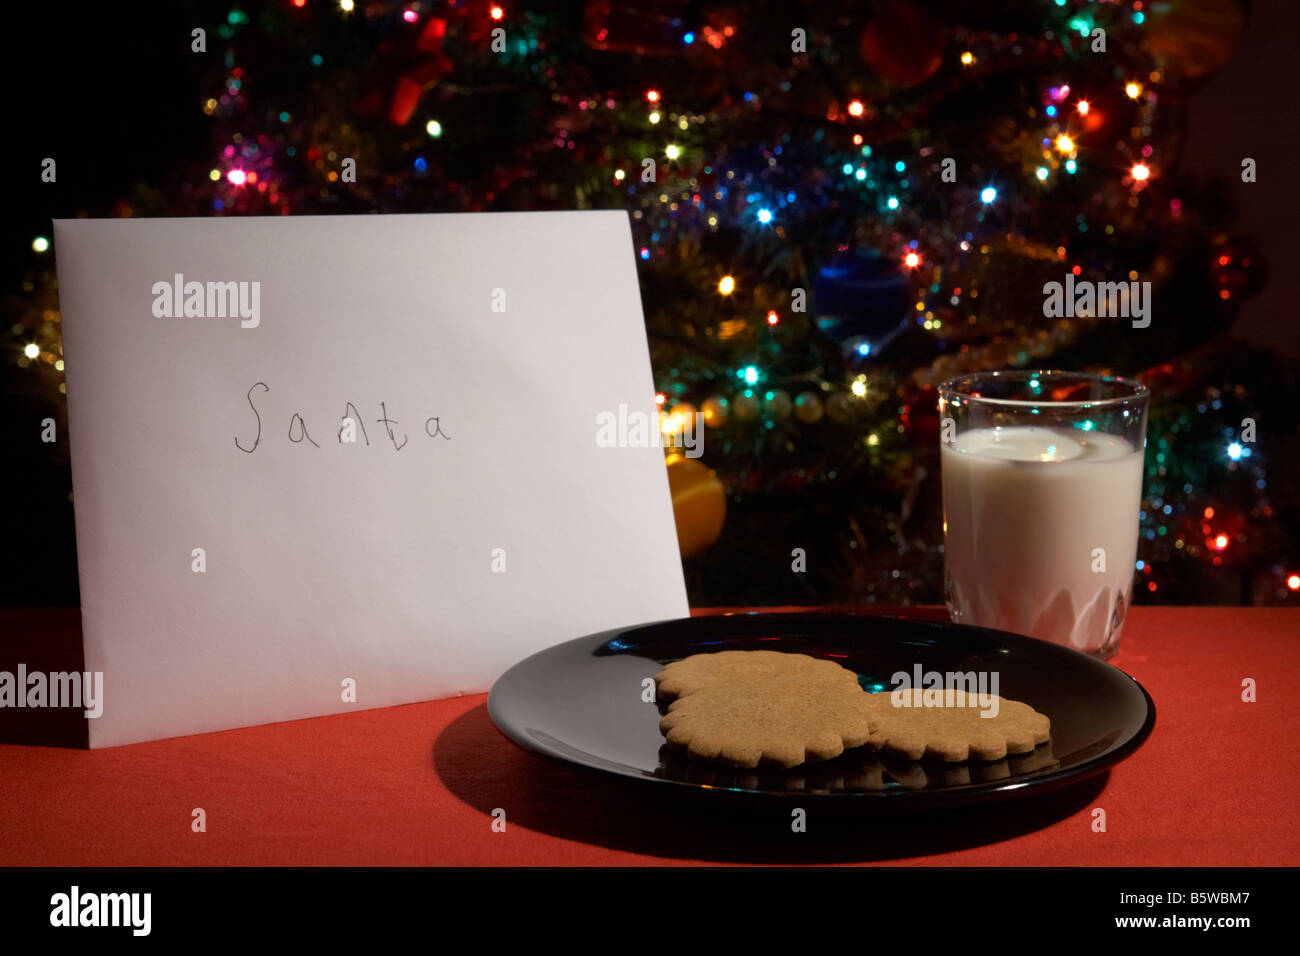 Childs carta a santa quedaron en la víspera de Navidad con galletas y un vaso de leche delante del árbol de navidad Foto de stock